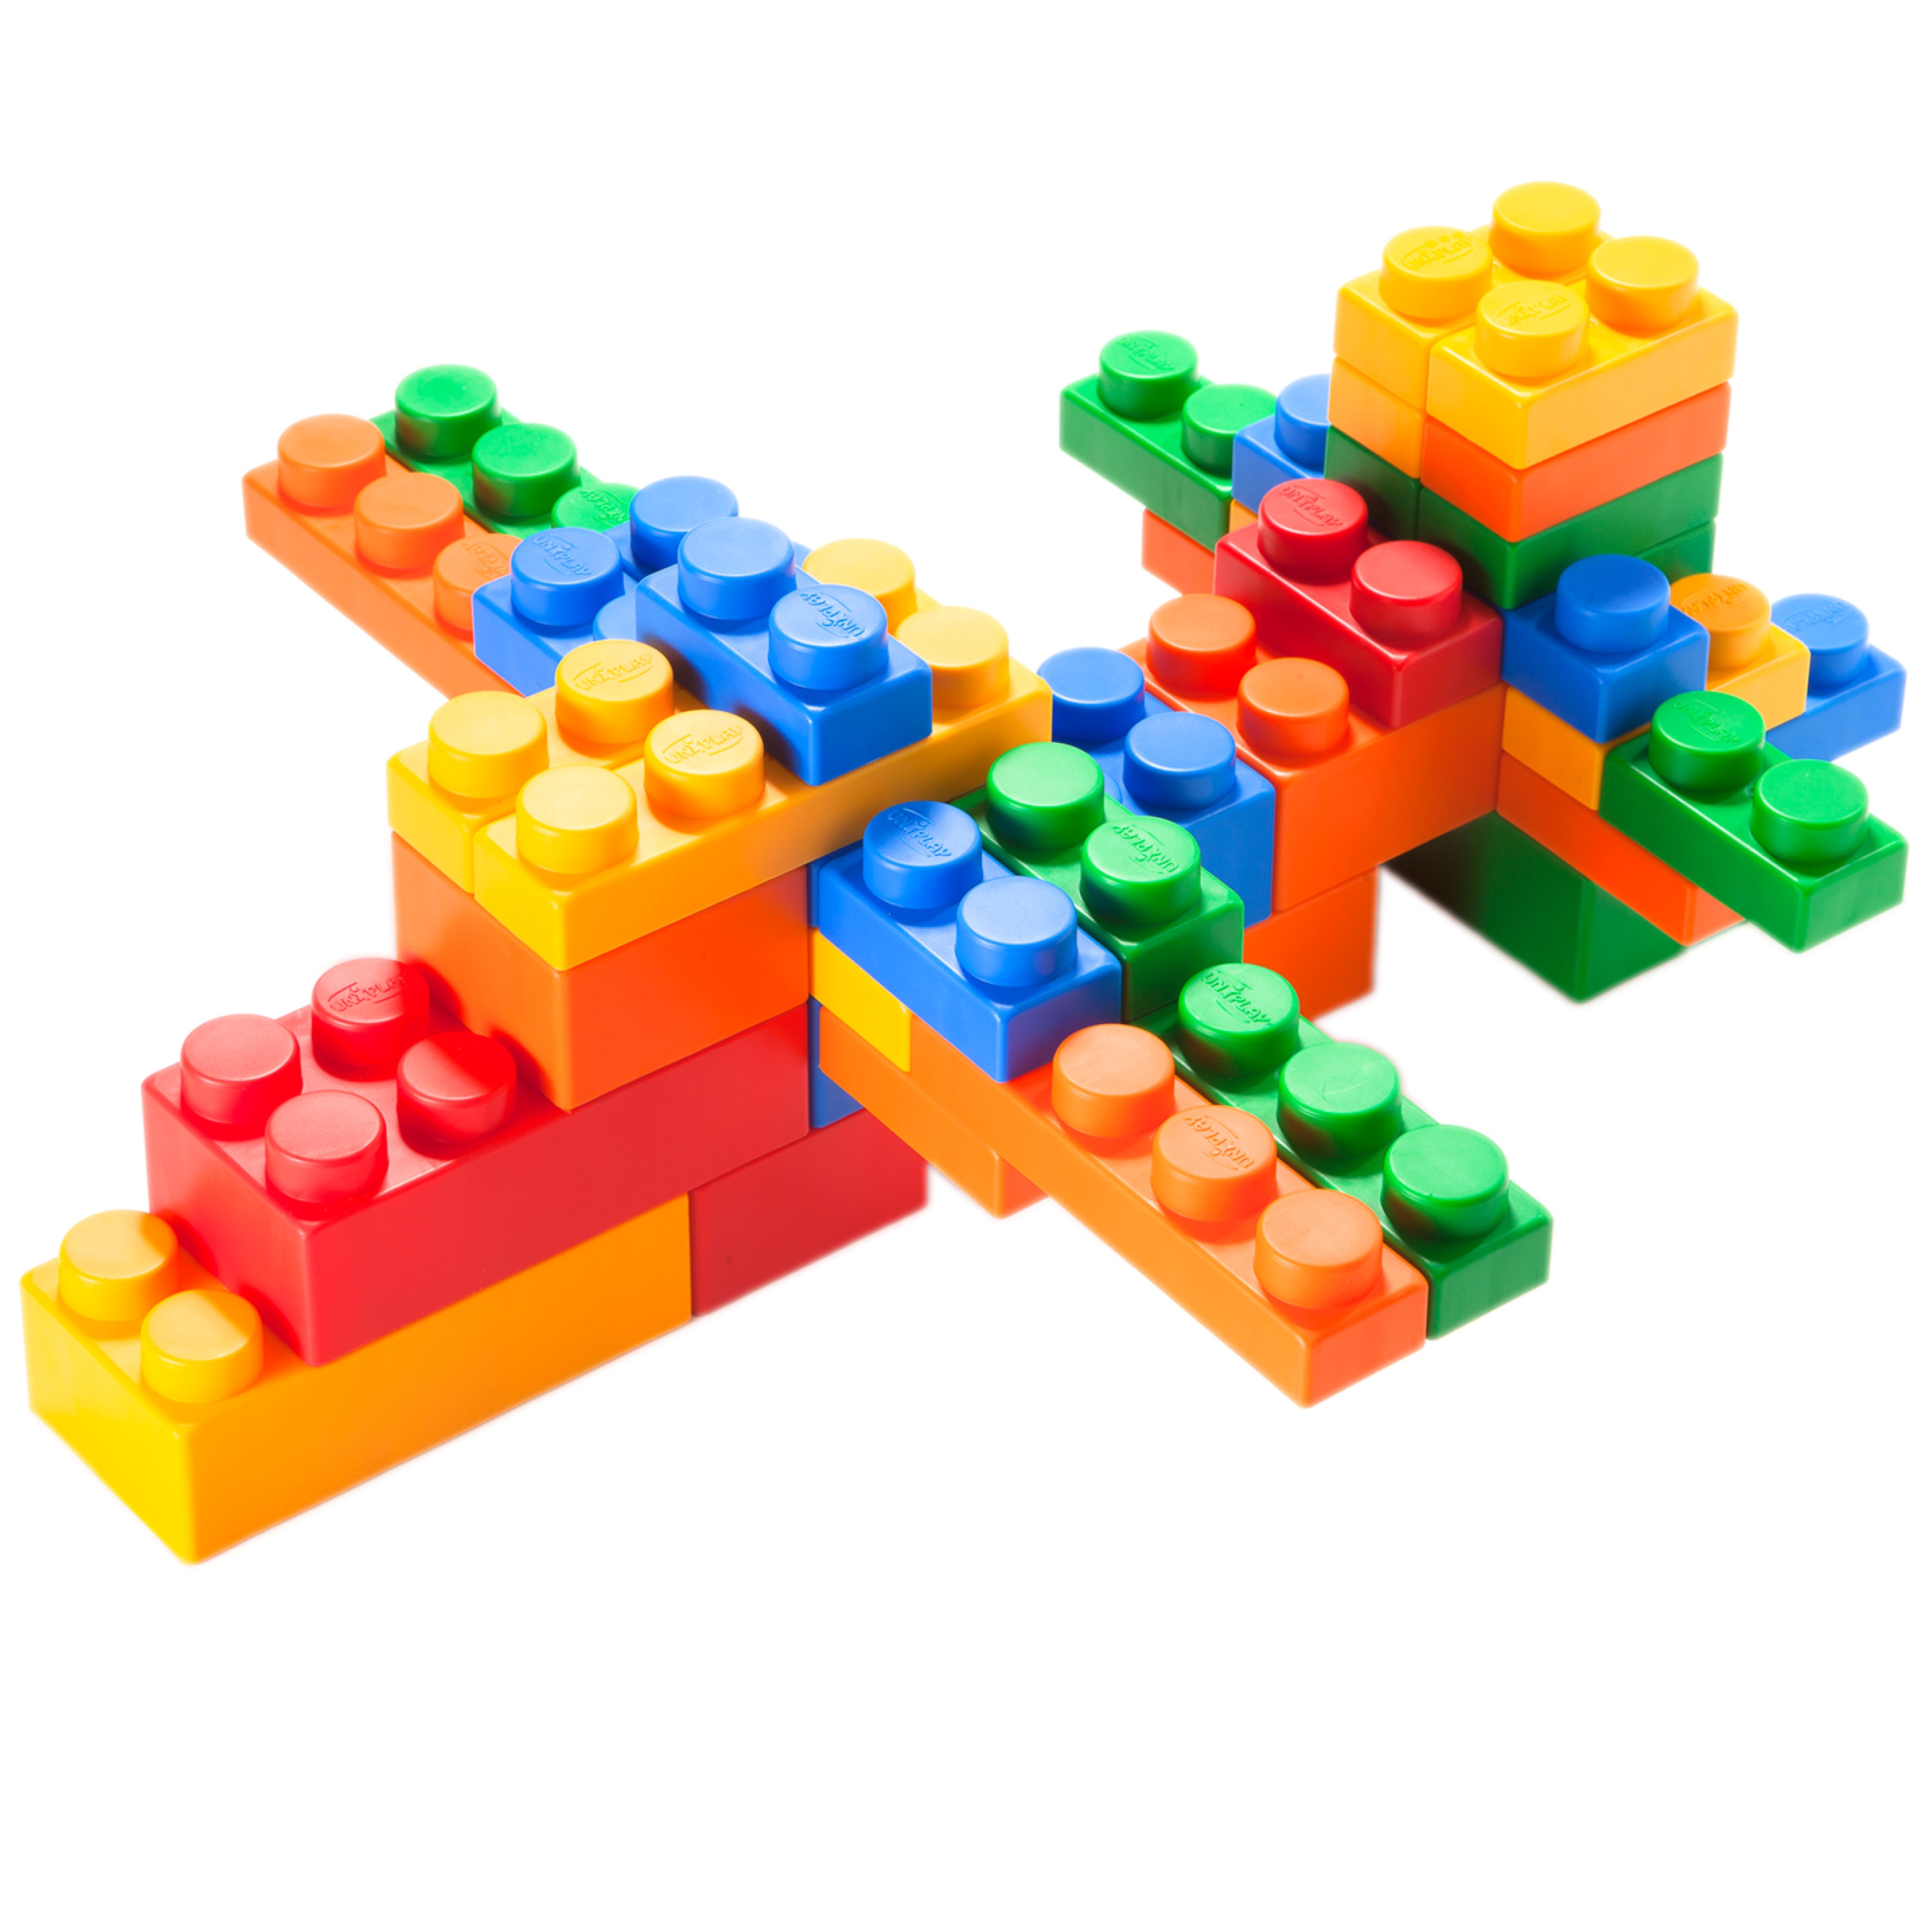 UNiPLAY Soft Building Blocks Mix Series 36pcs (#UN3036PR)